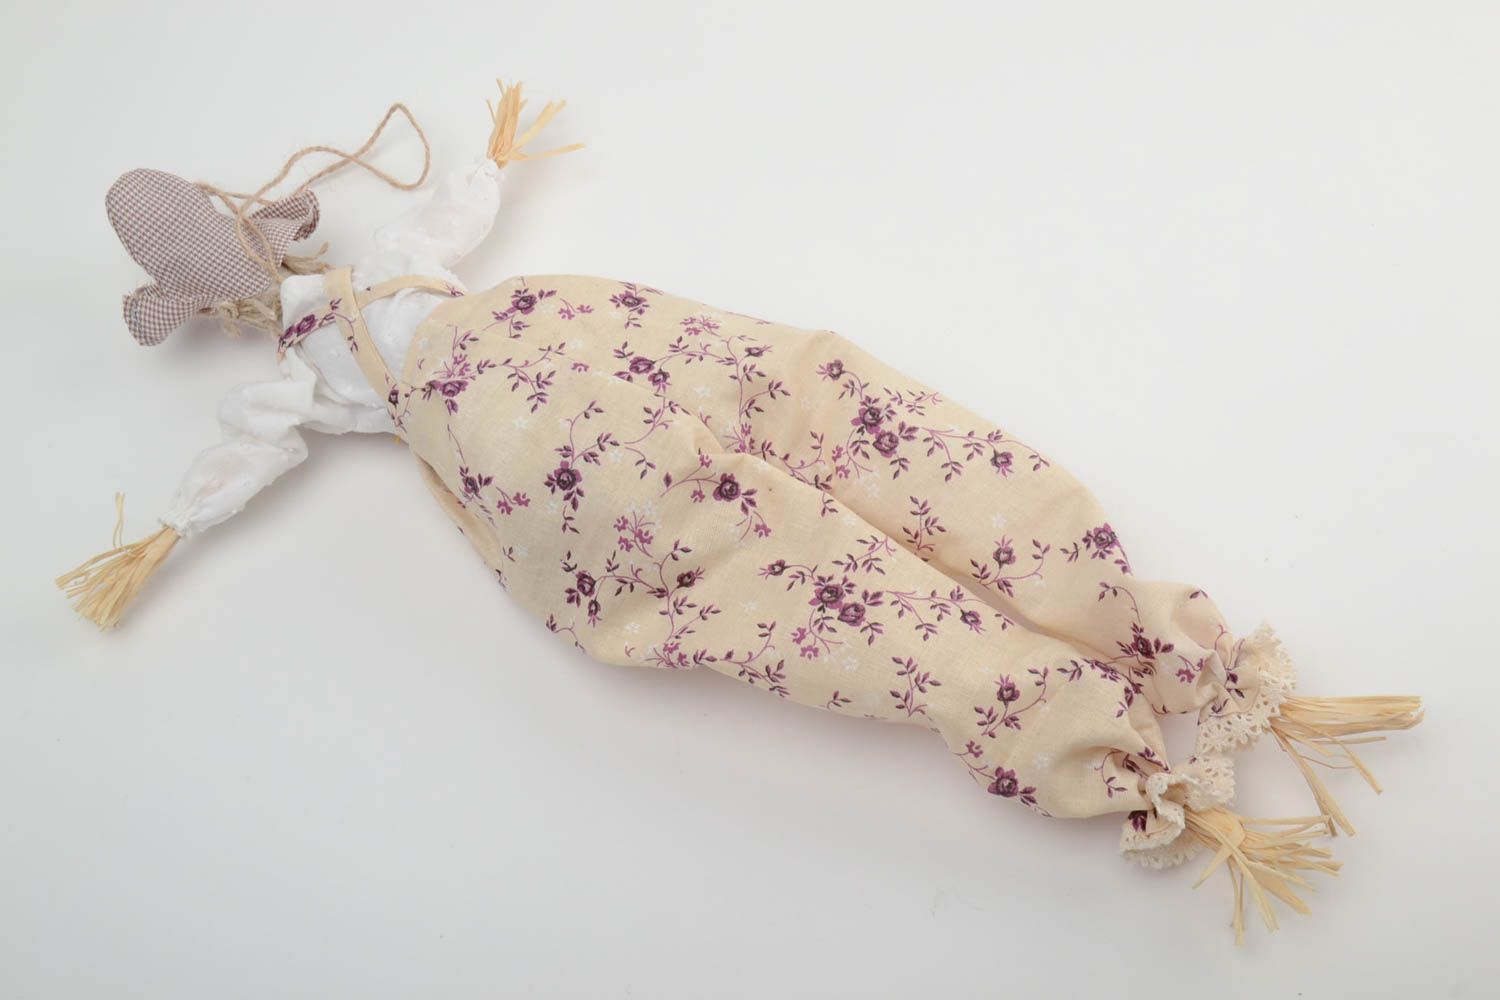 Мягкая игрушка с петелькой подвеска кукла из ситца и хлопка Пугало хенд мэйд фото 4